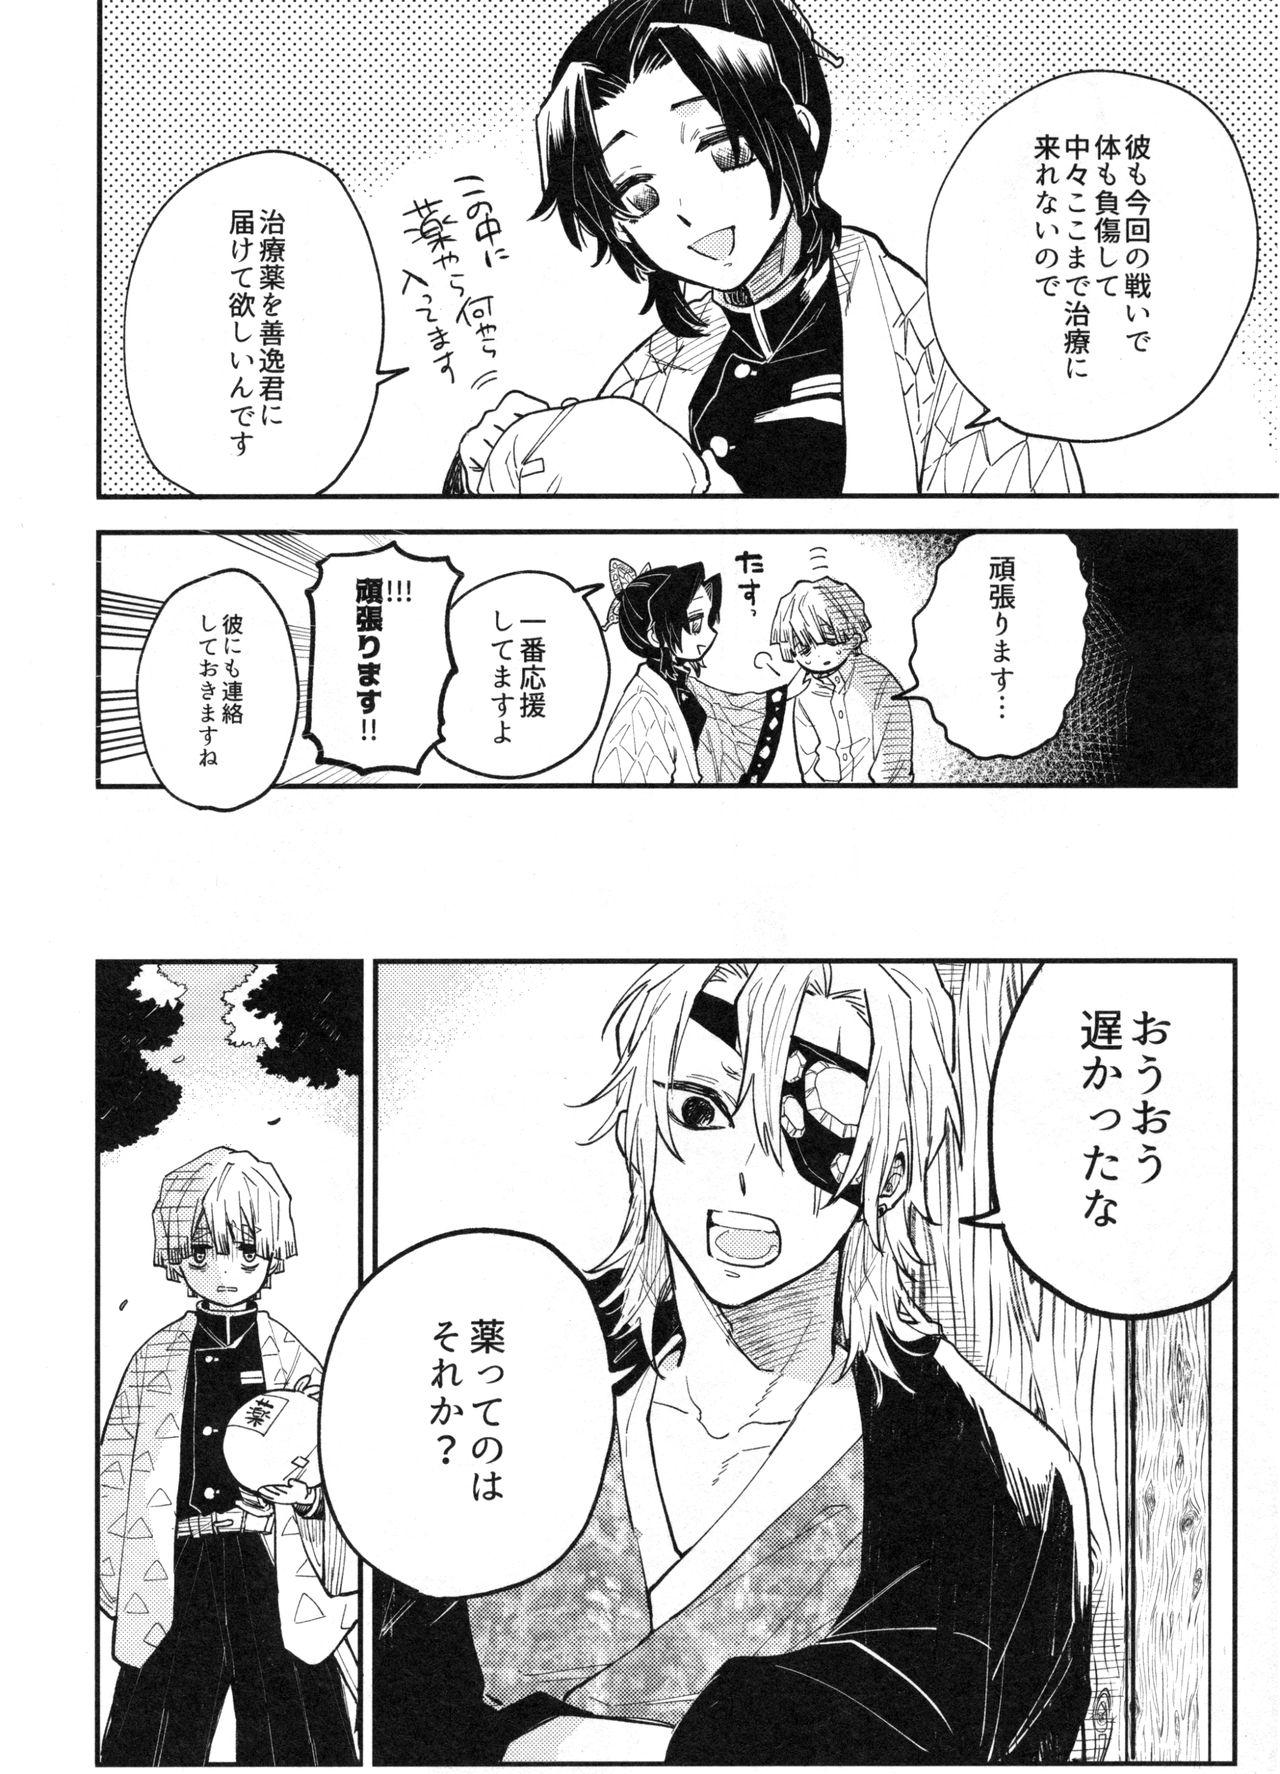 Buttfucking ANTI HERO - Kimetsu no yaiba Novia - Page 11